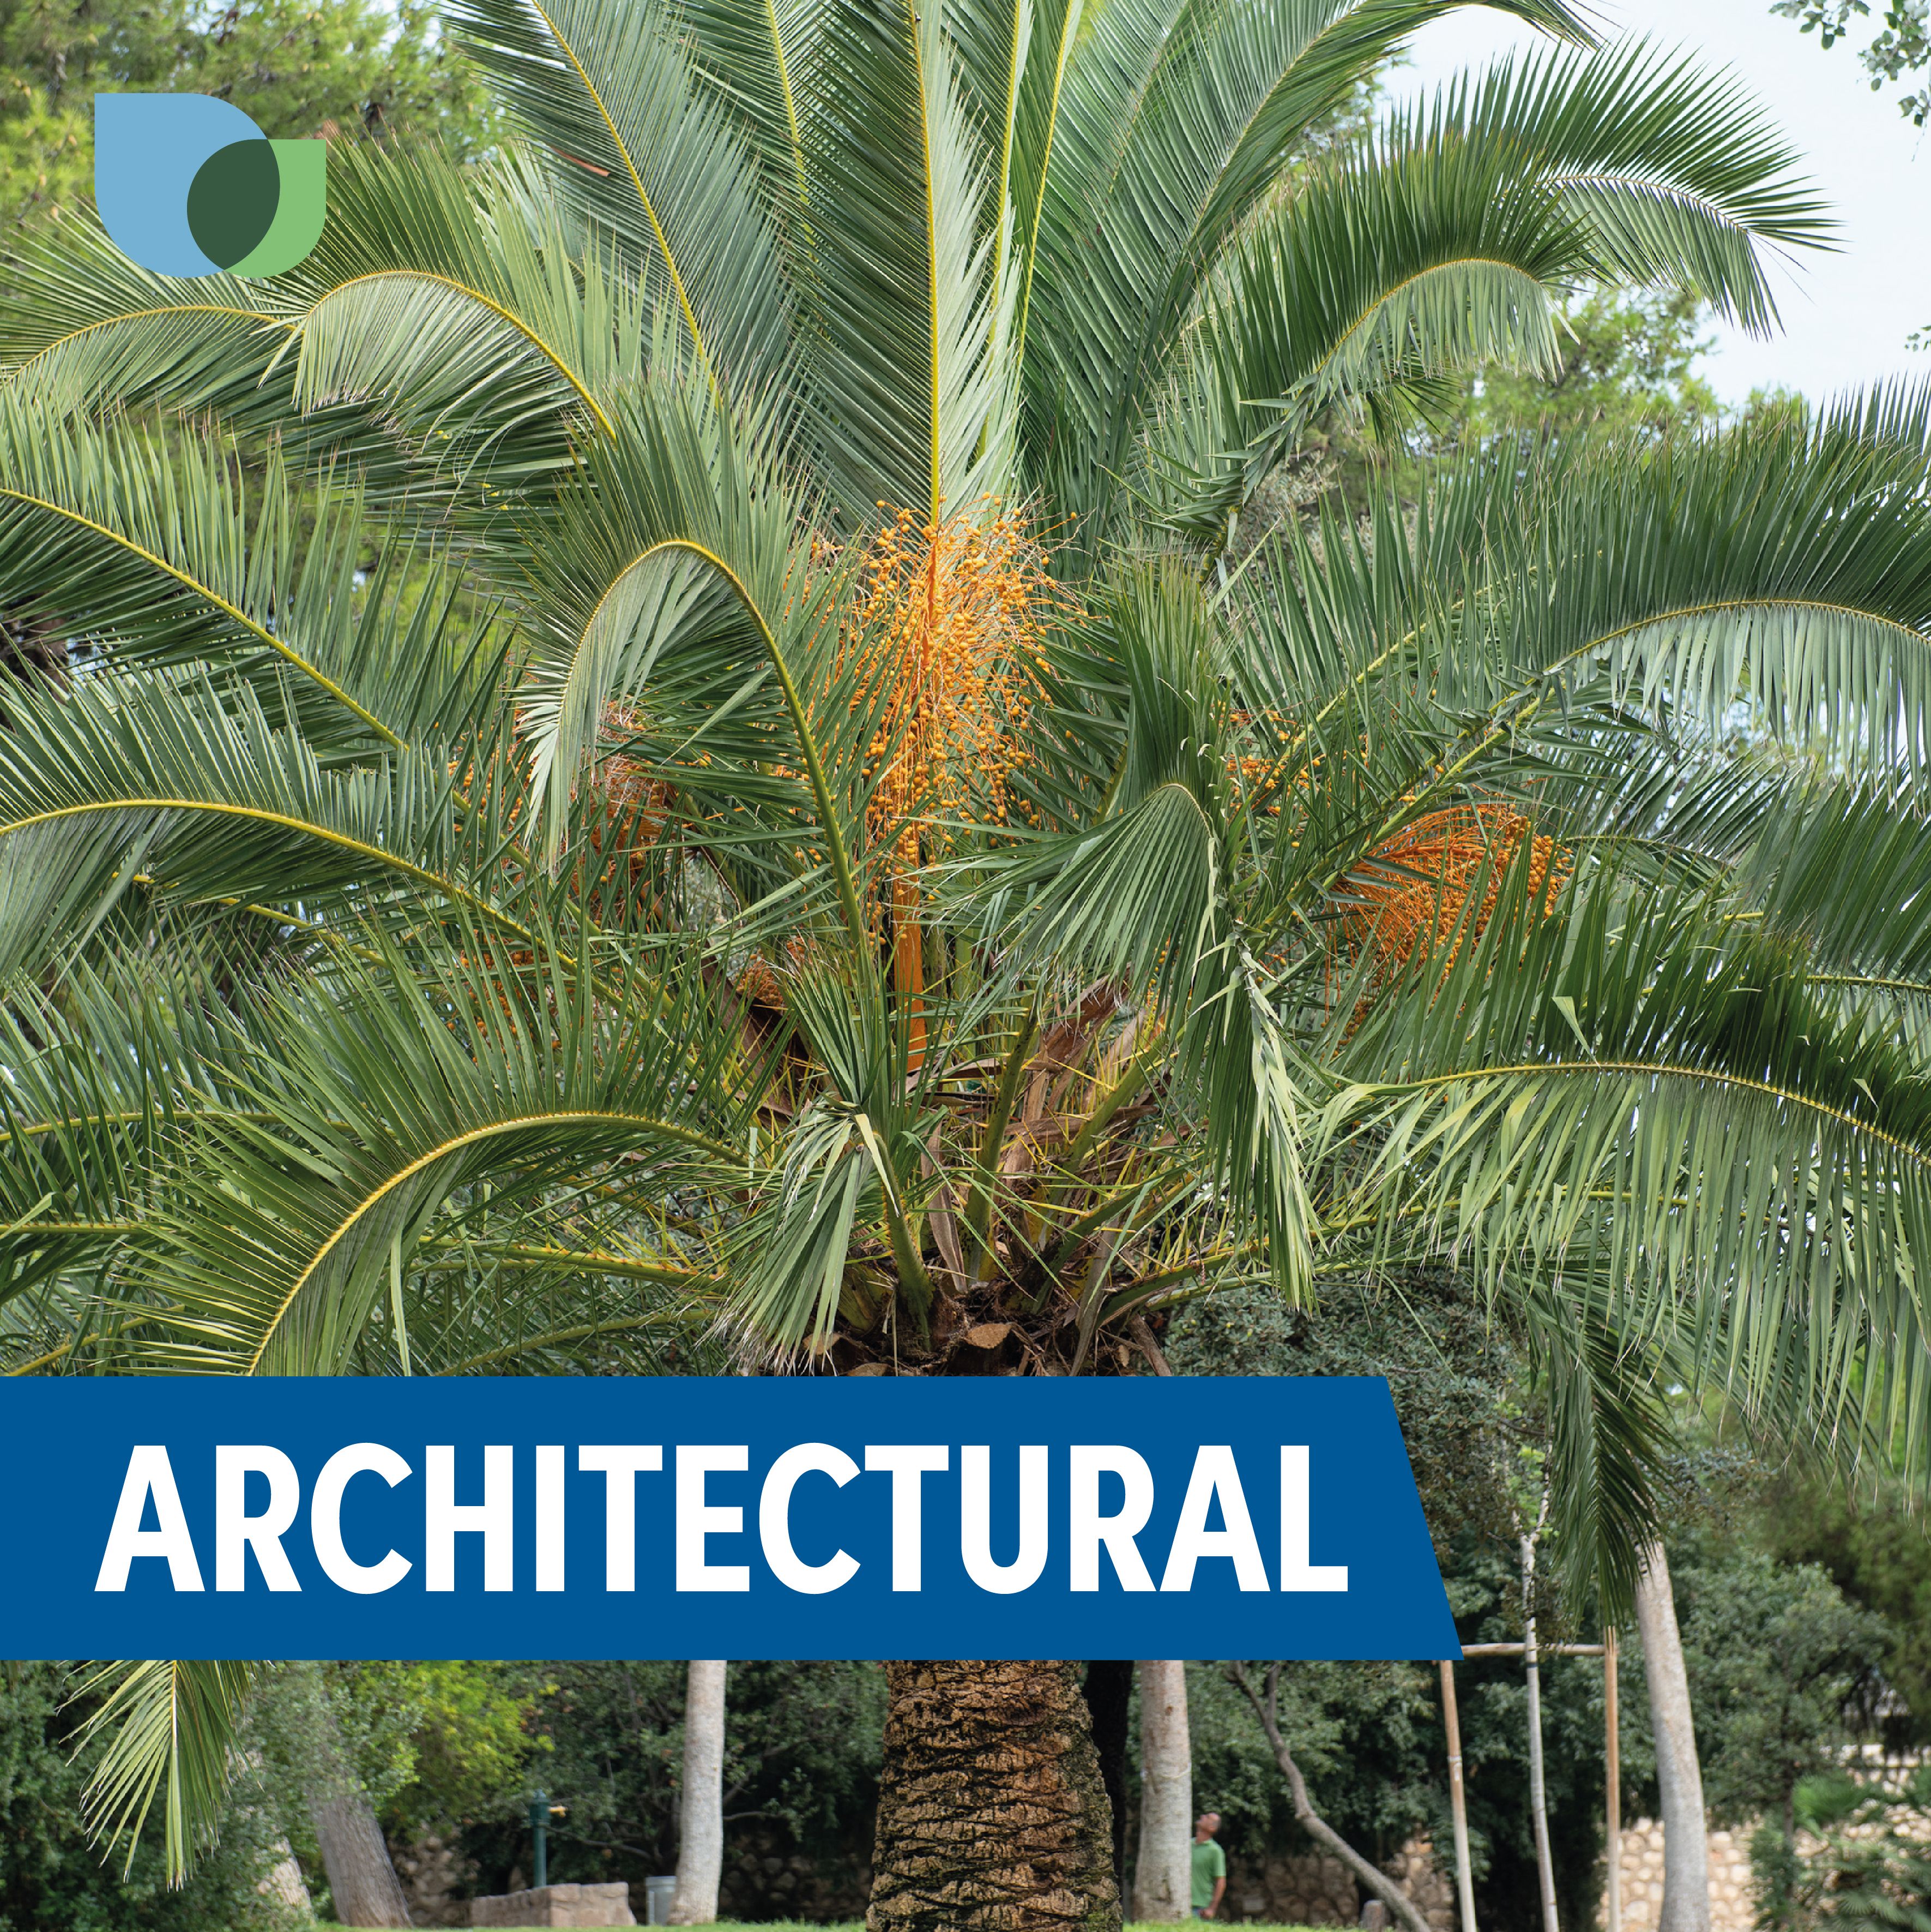 Verve Hardy Canary Island Date Palm